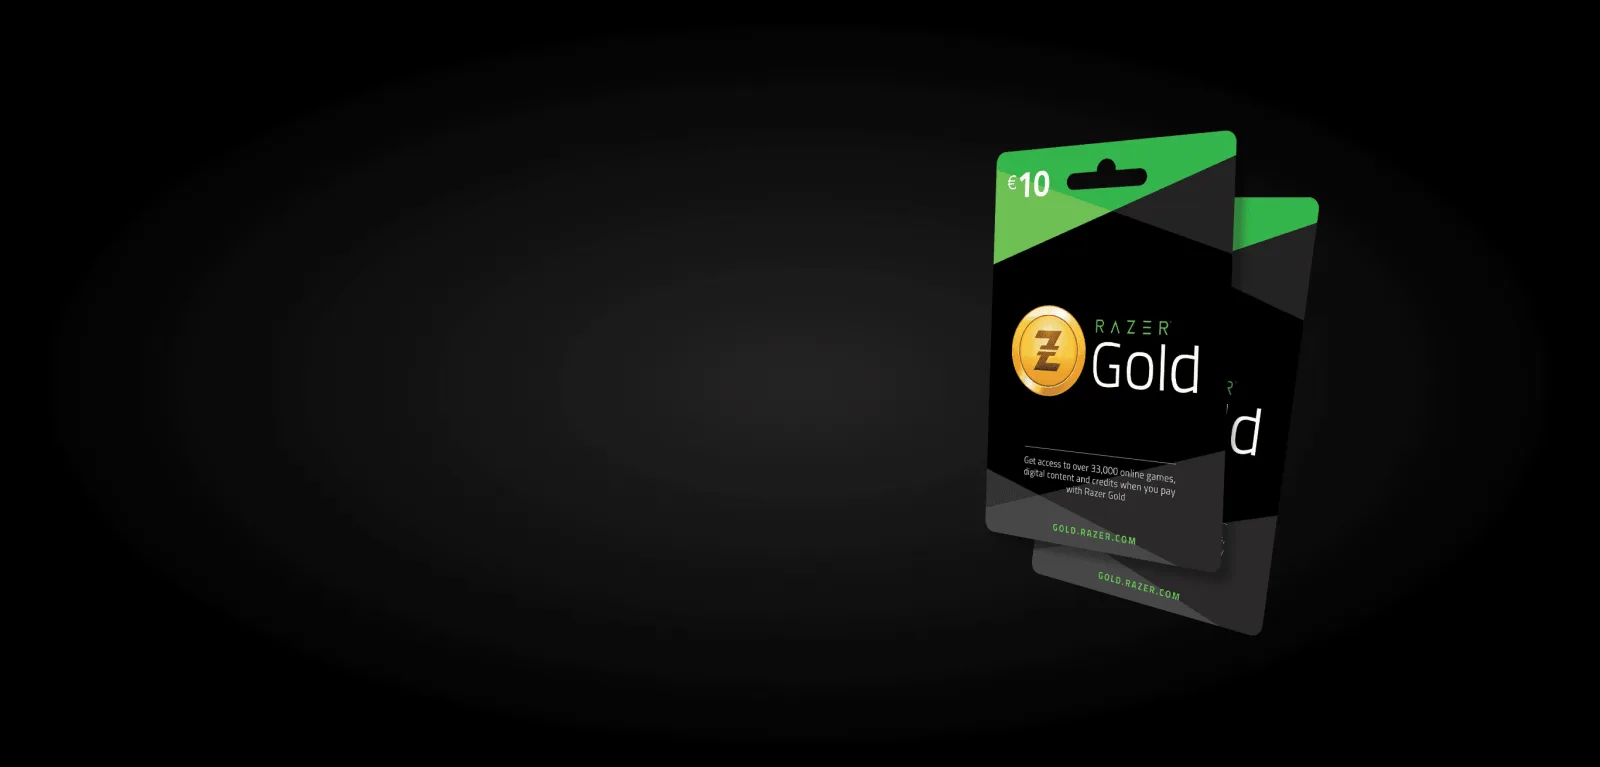 Erhalten Sie 20 Euro Razor Gold gratis beim Kauf eines Gillette Labs Rasierers und einer Packung Rasierklingen